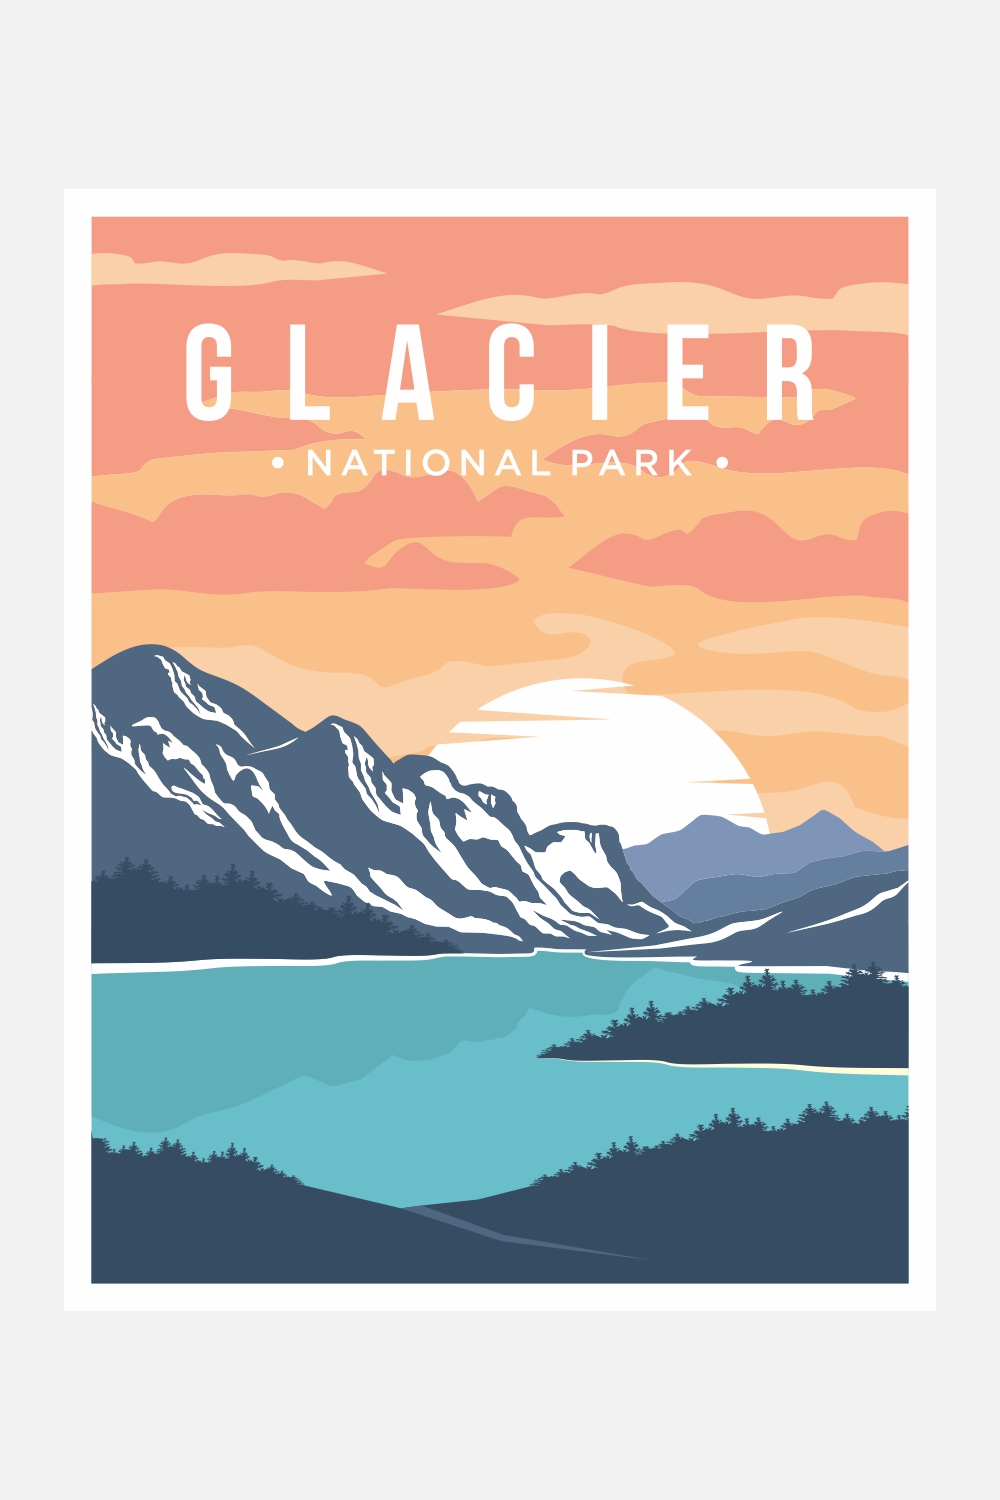 Glacier National Park poster vector illustration design – Only $8 pinterest preview image.